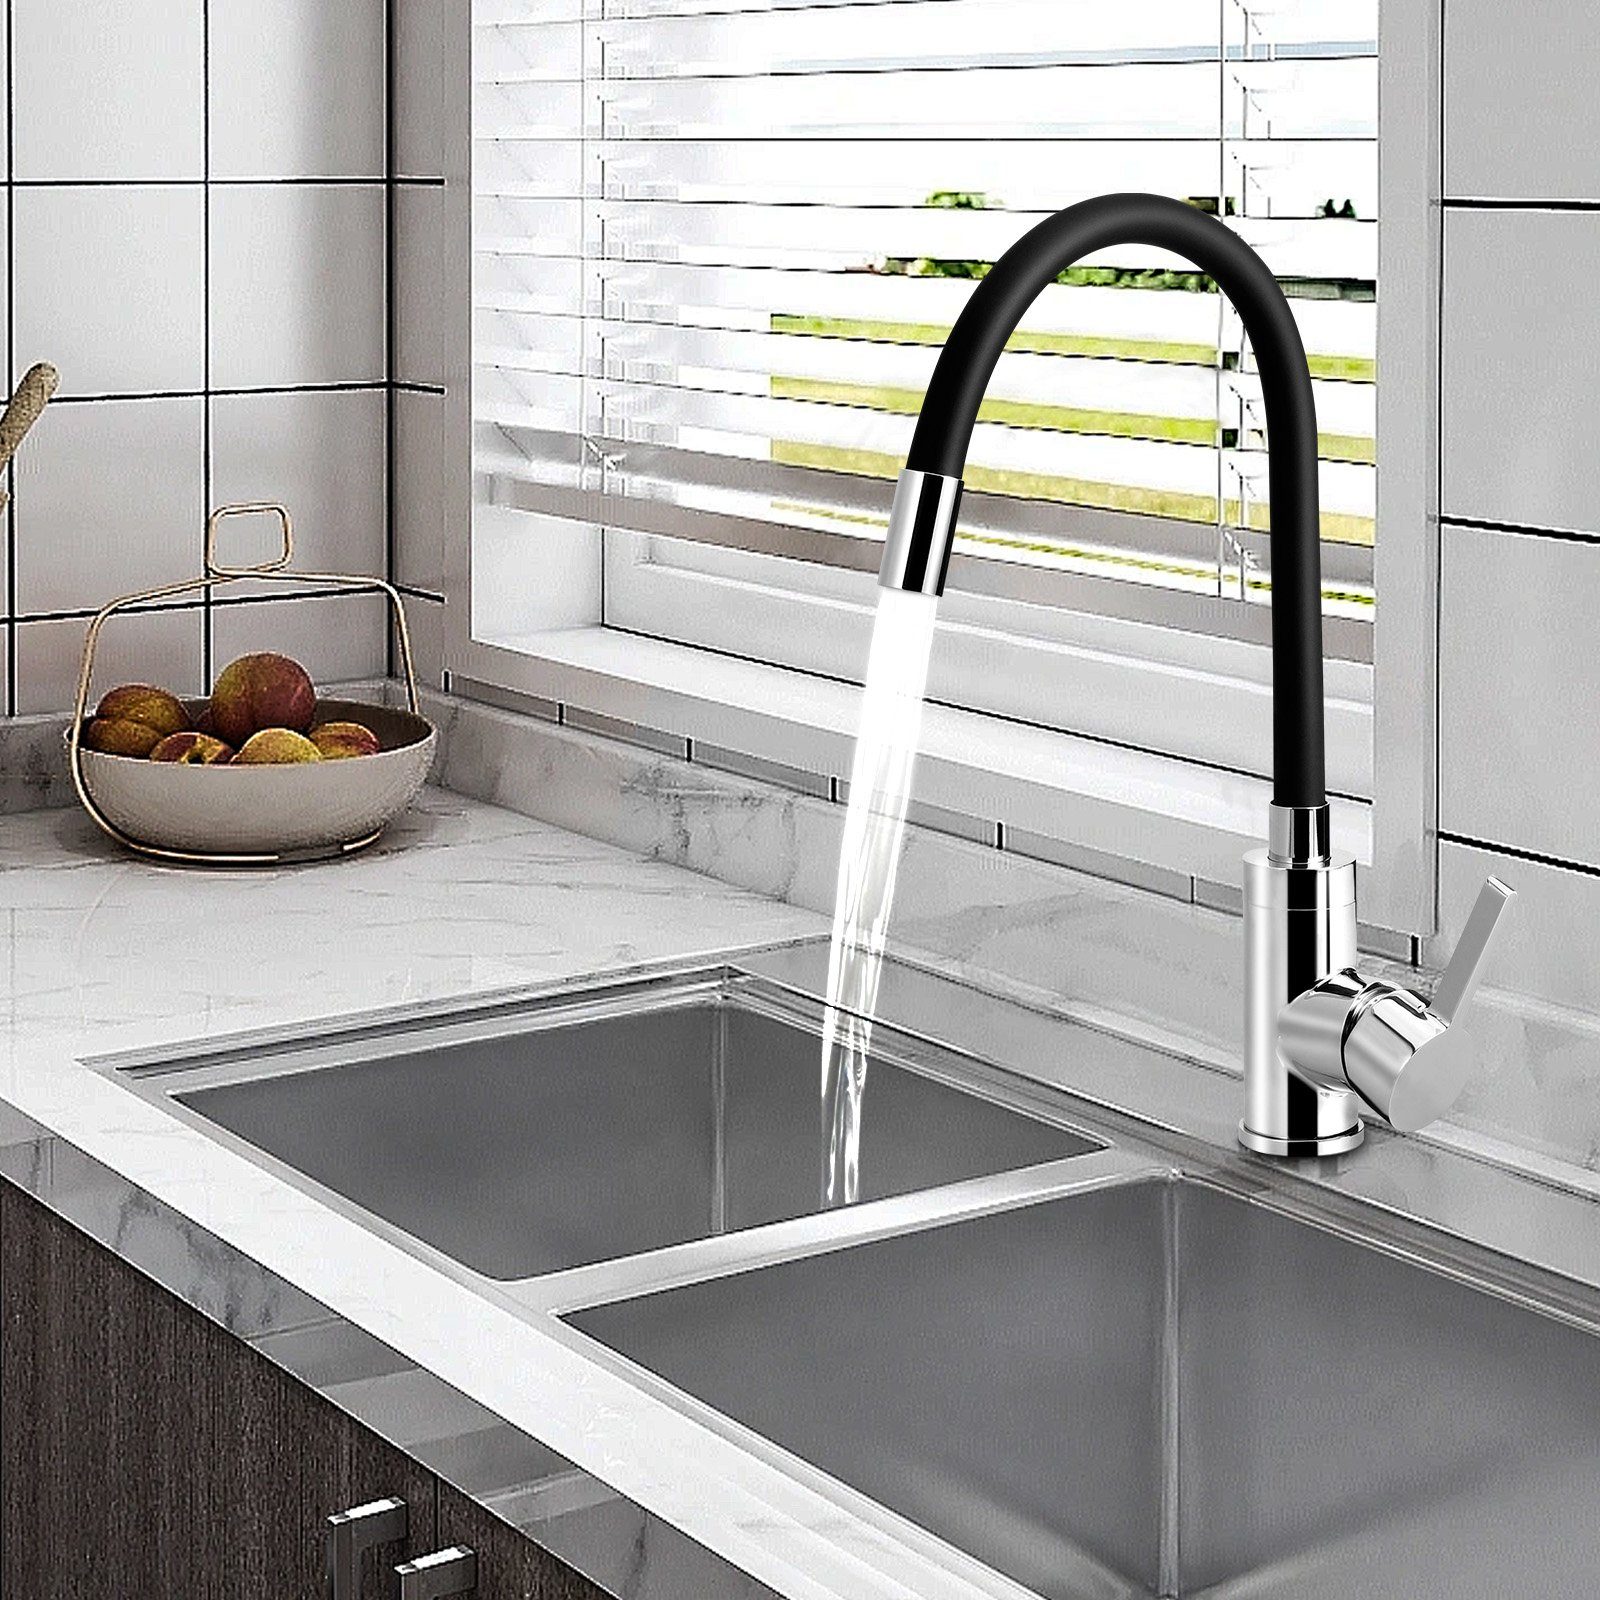 XIIW Küchenarmatur Wasserhahn Küche mit 2 Funktionen Brause Küchenarmatur  (Höhe 347mm,360° Drehbare Mischbatterie) Flexible Silikonschlauch in  Lebensmittelqualität